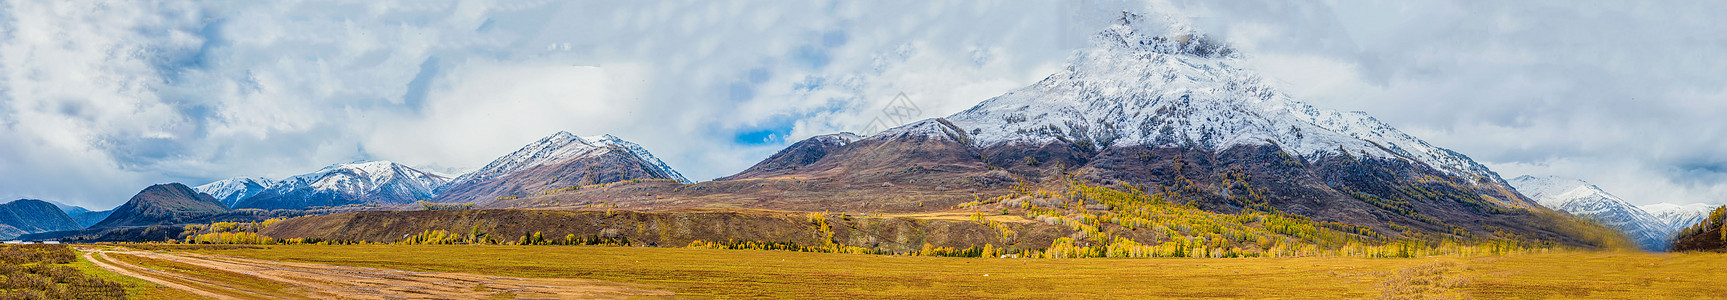 新疆草原北疆秋色雪山全景背景